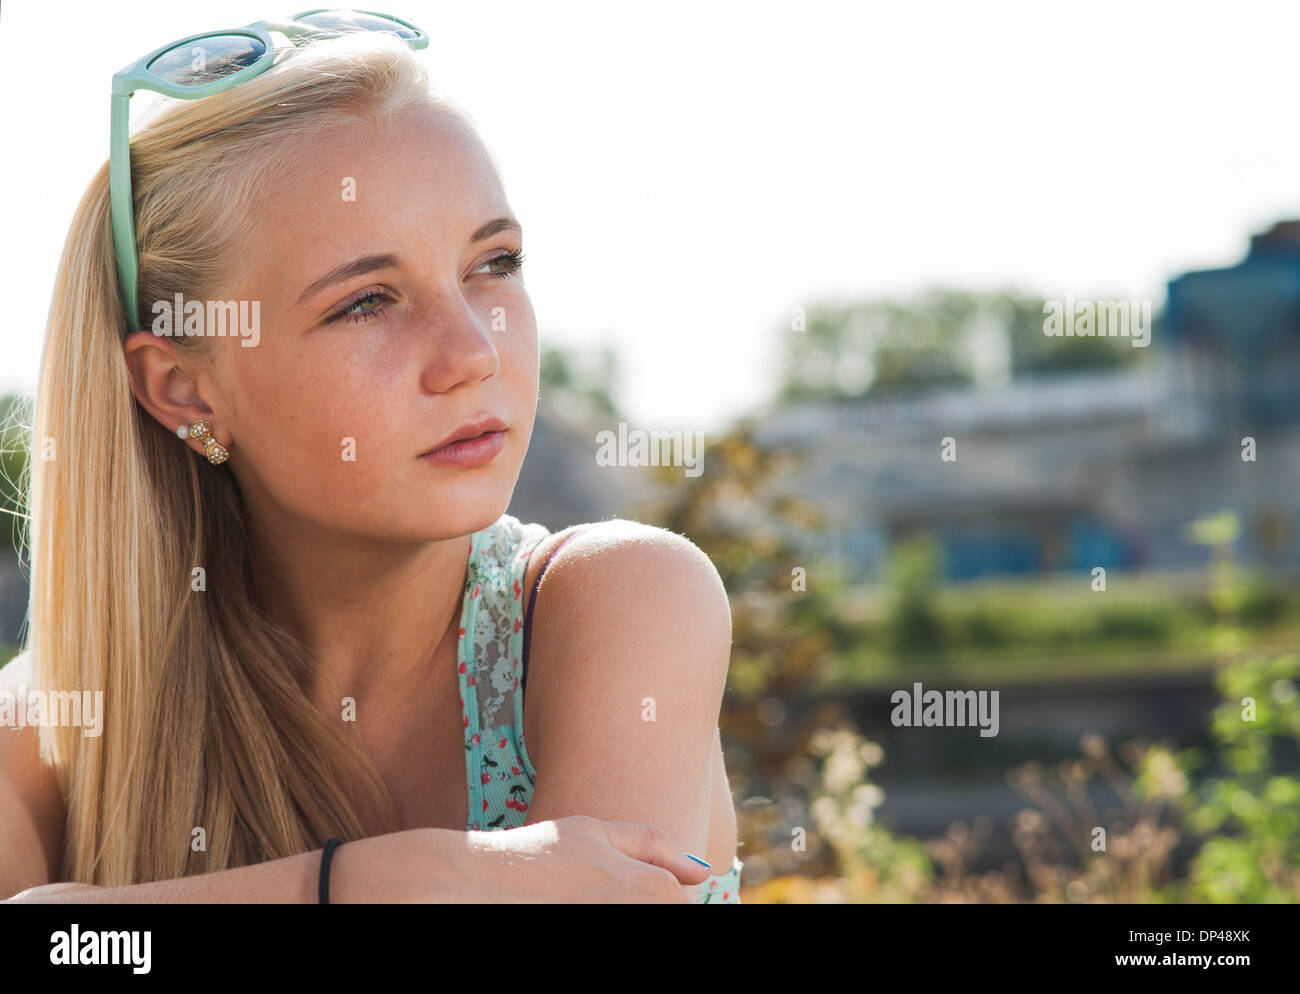 Ritratto di ragazza adolescente all'aperto, Mannheim, Baden-Württemberg, Germania Foto Stock